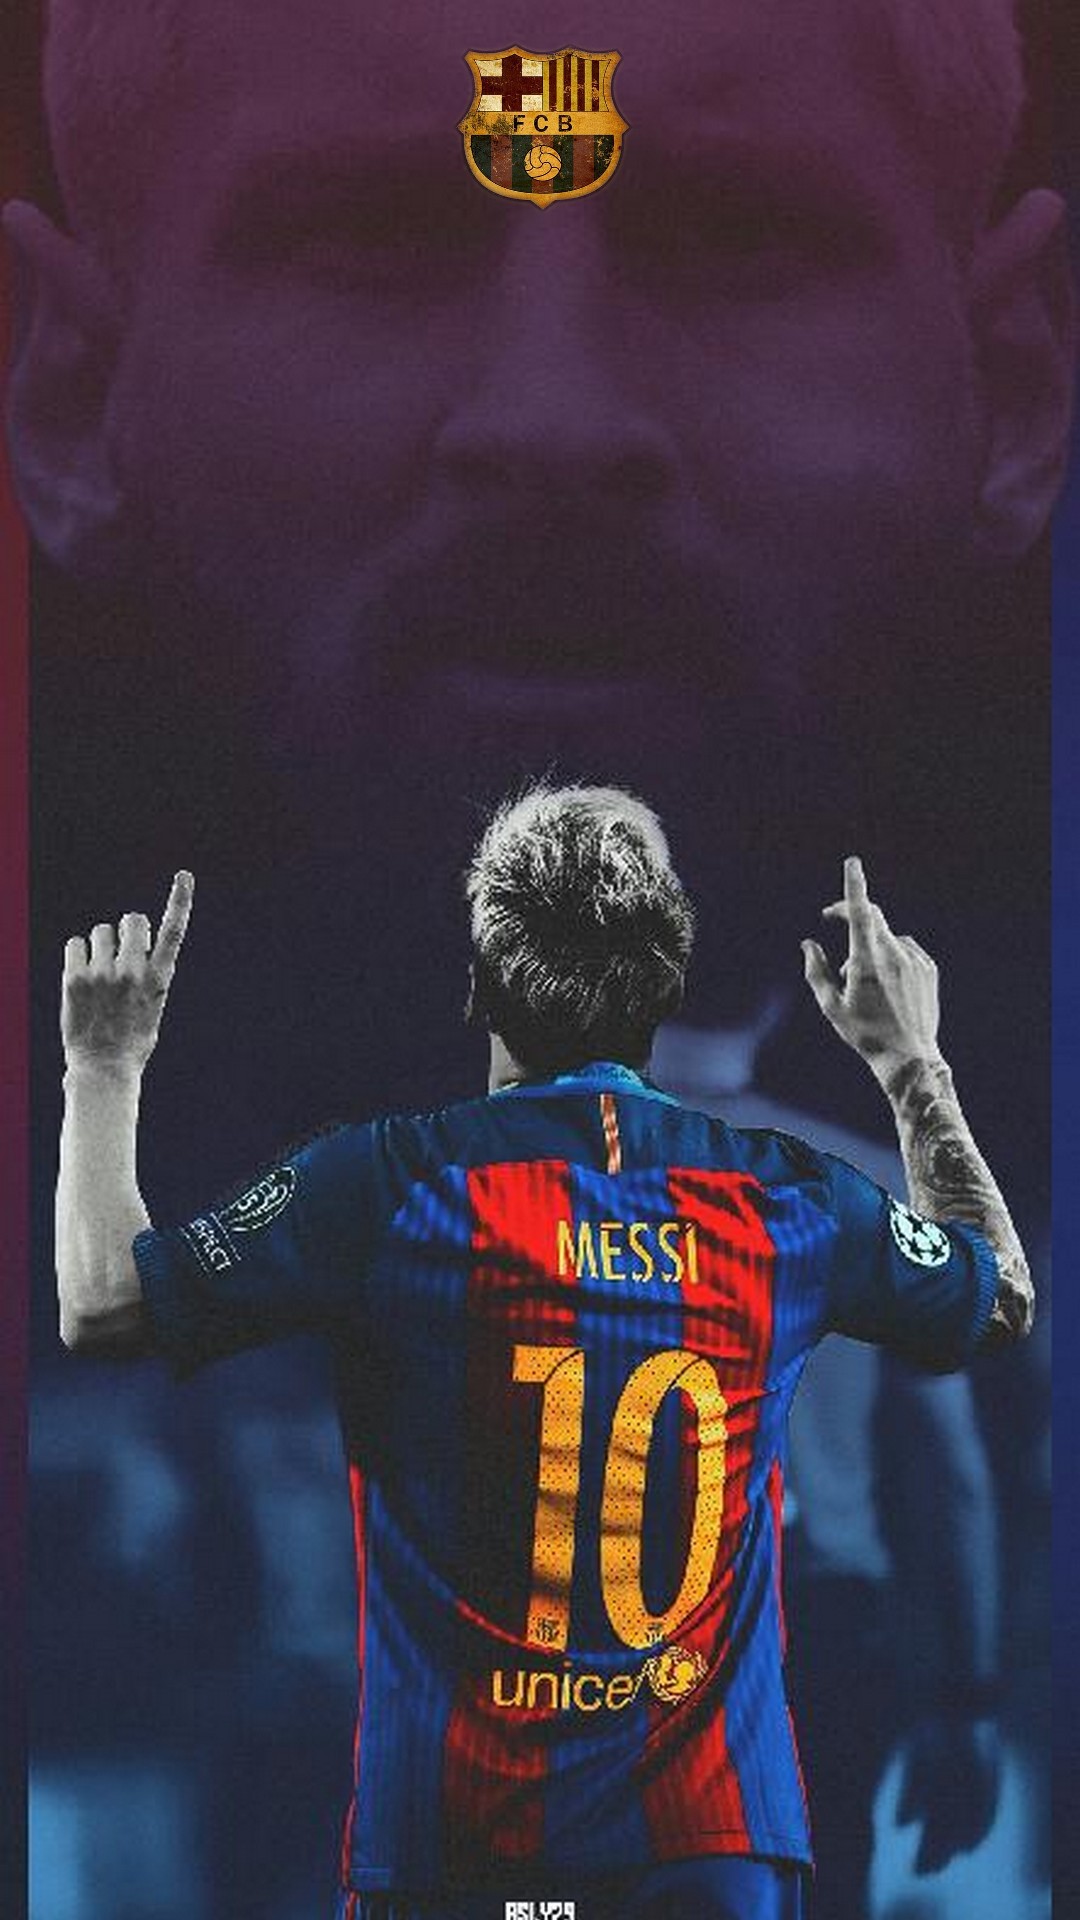 Cho buổi chiều với những bức hình nền Lionel Messi điện thoại HD của đội bóng Barcelona. Tất cả đều là những tác phẩm nghệ thuật của những tác giả tài năng sử dụng các kỹ thuật tạo hình chuyên nghiệp để tạo ra những bức hình nền đáng để sở hữu và ngắm nhìn.